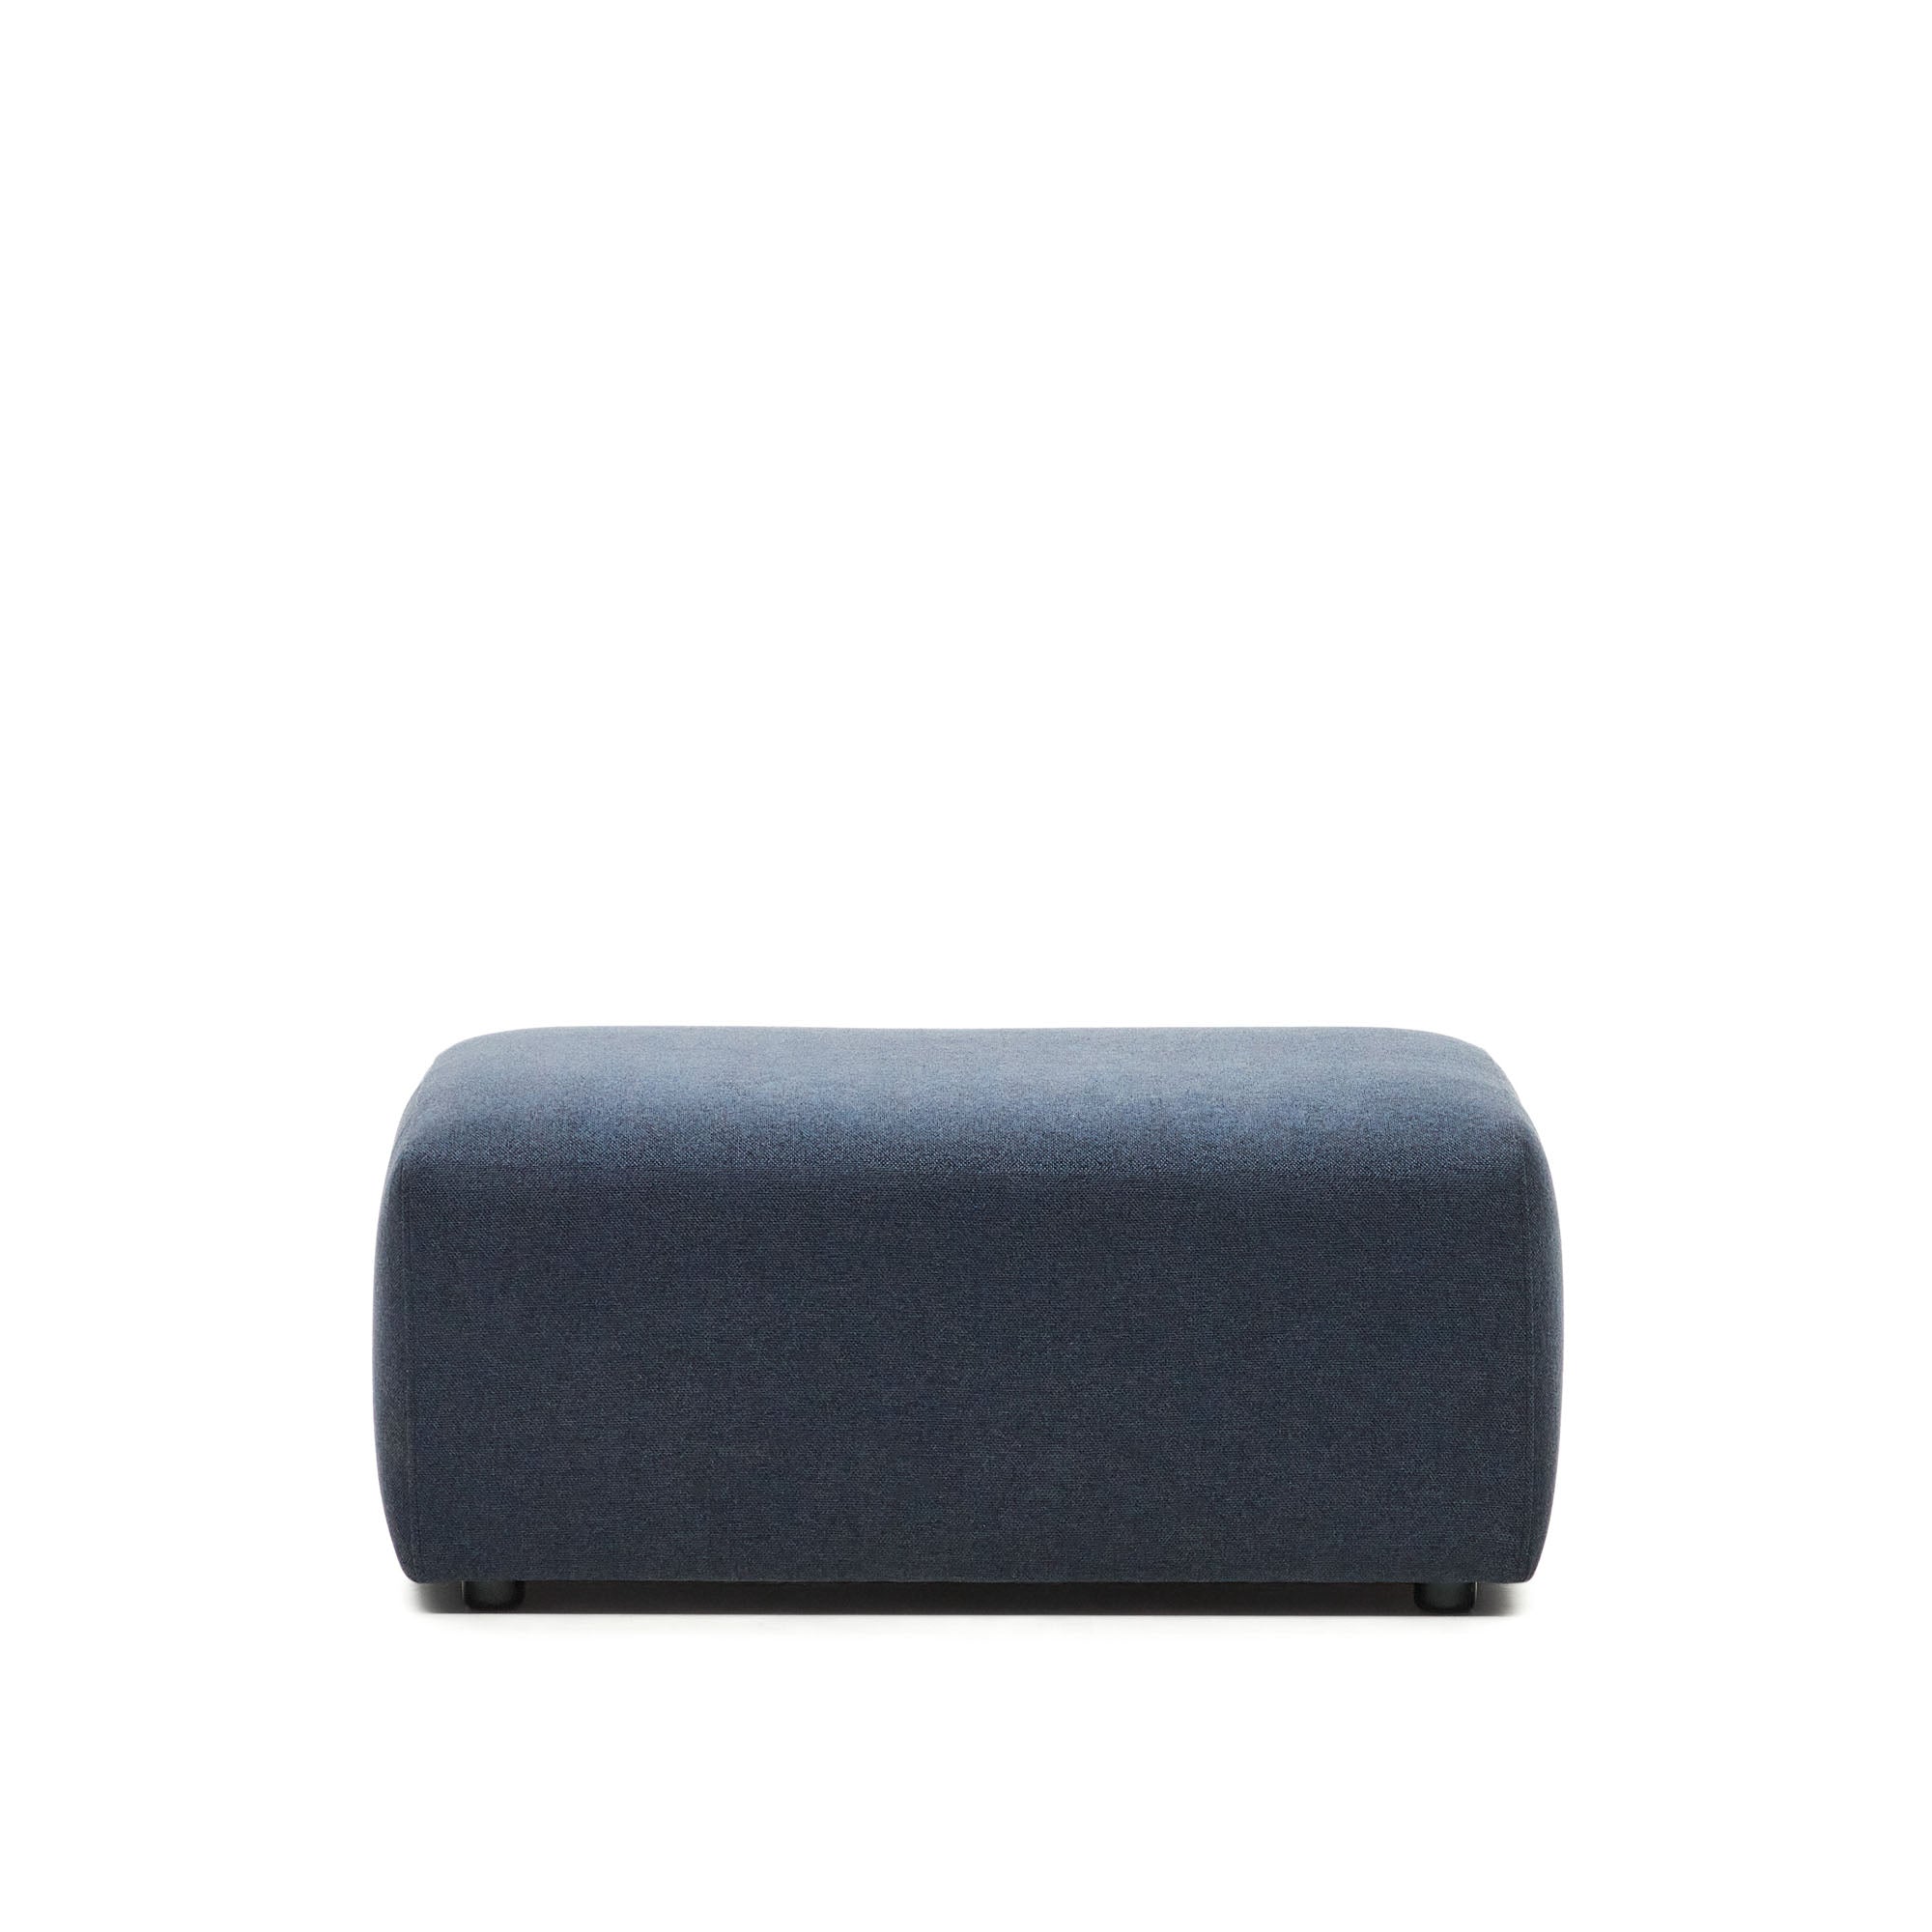 Neom puff, kék színben, 75 x 89 cm